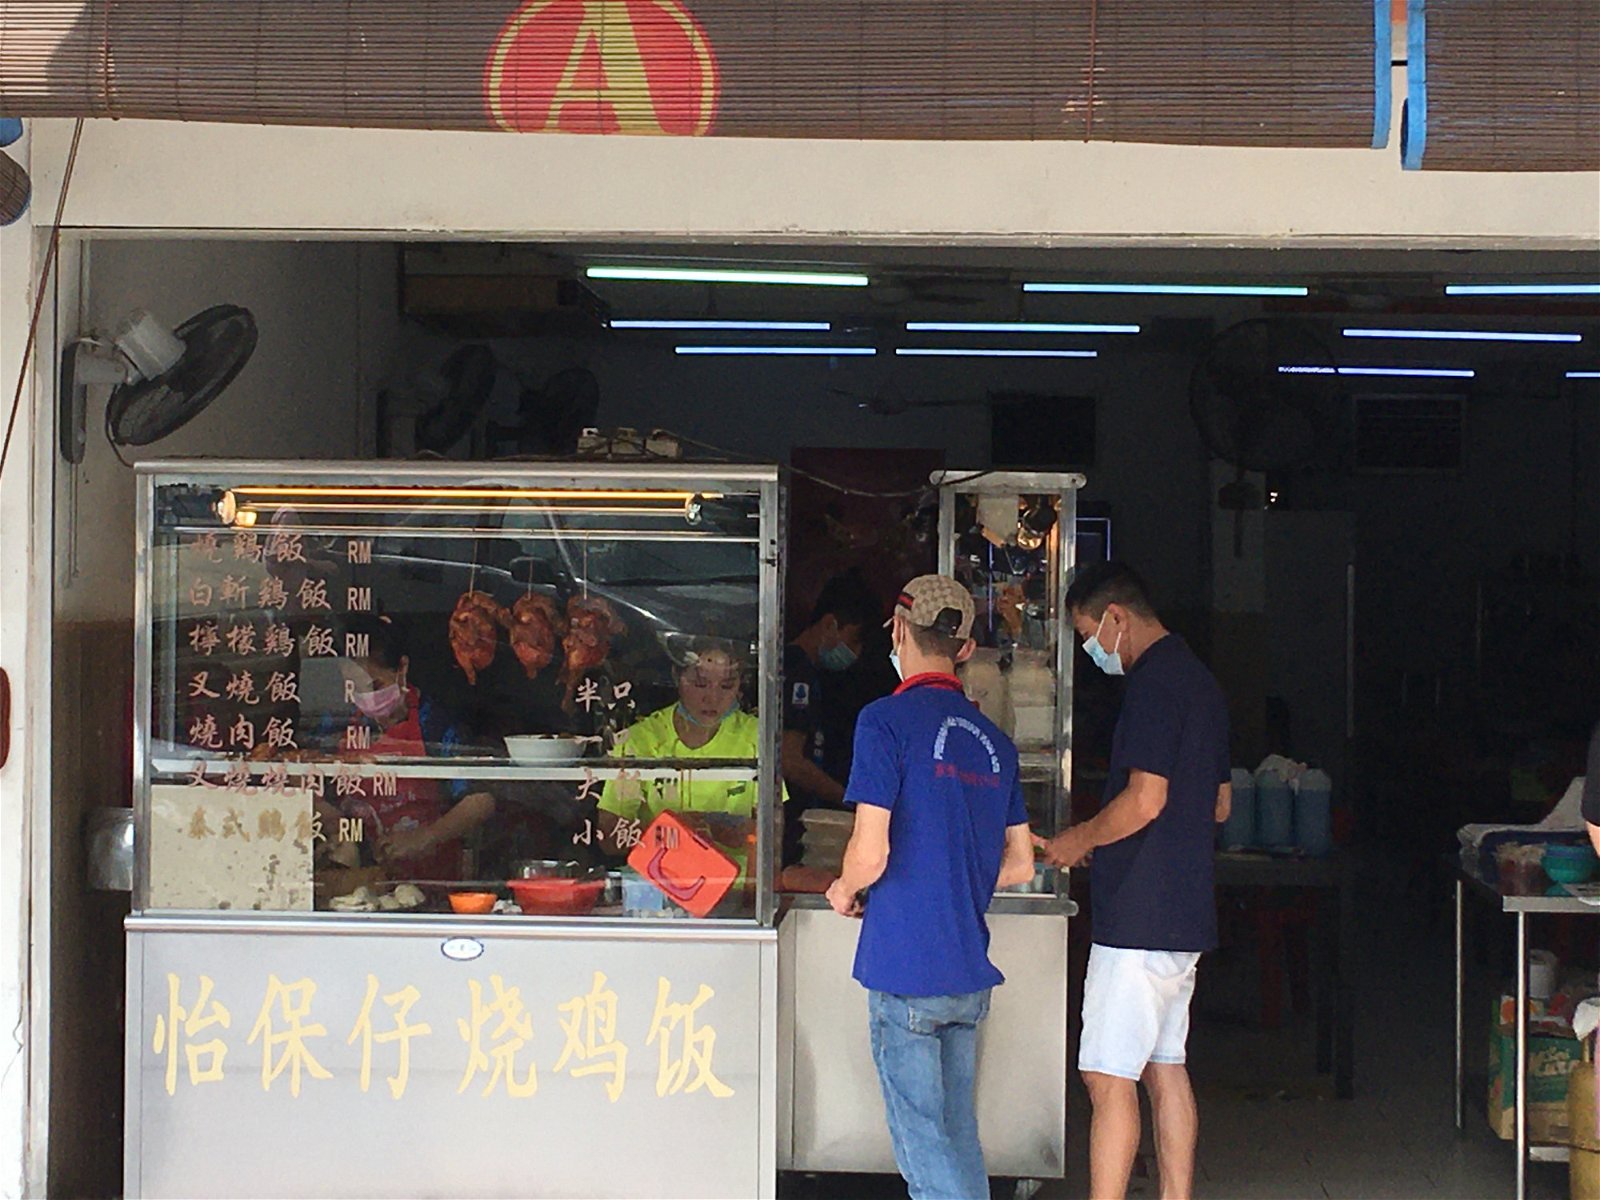 怡保仔烧鸡饭咖啡店6月1日调涨鸡饭售价至5令吉50仙。